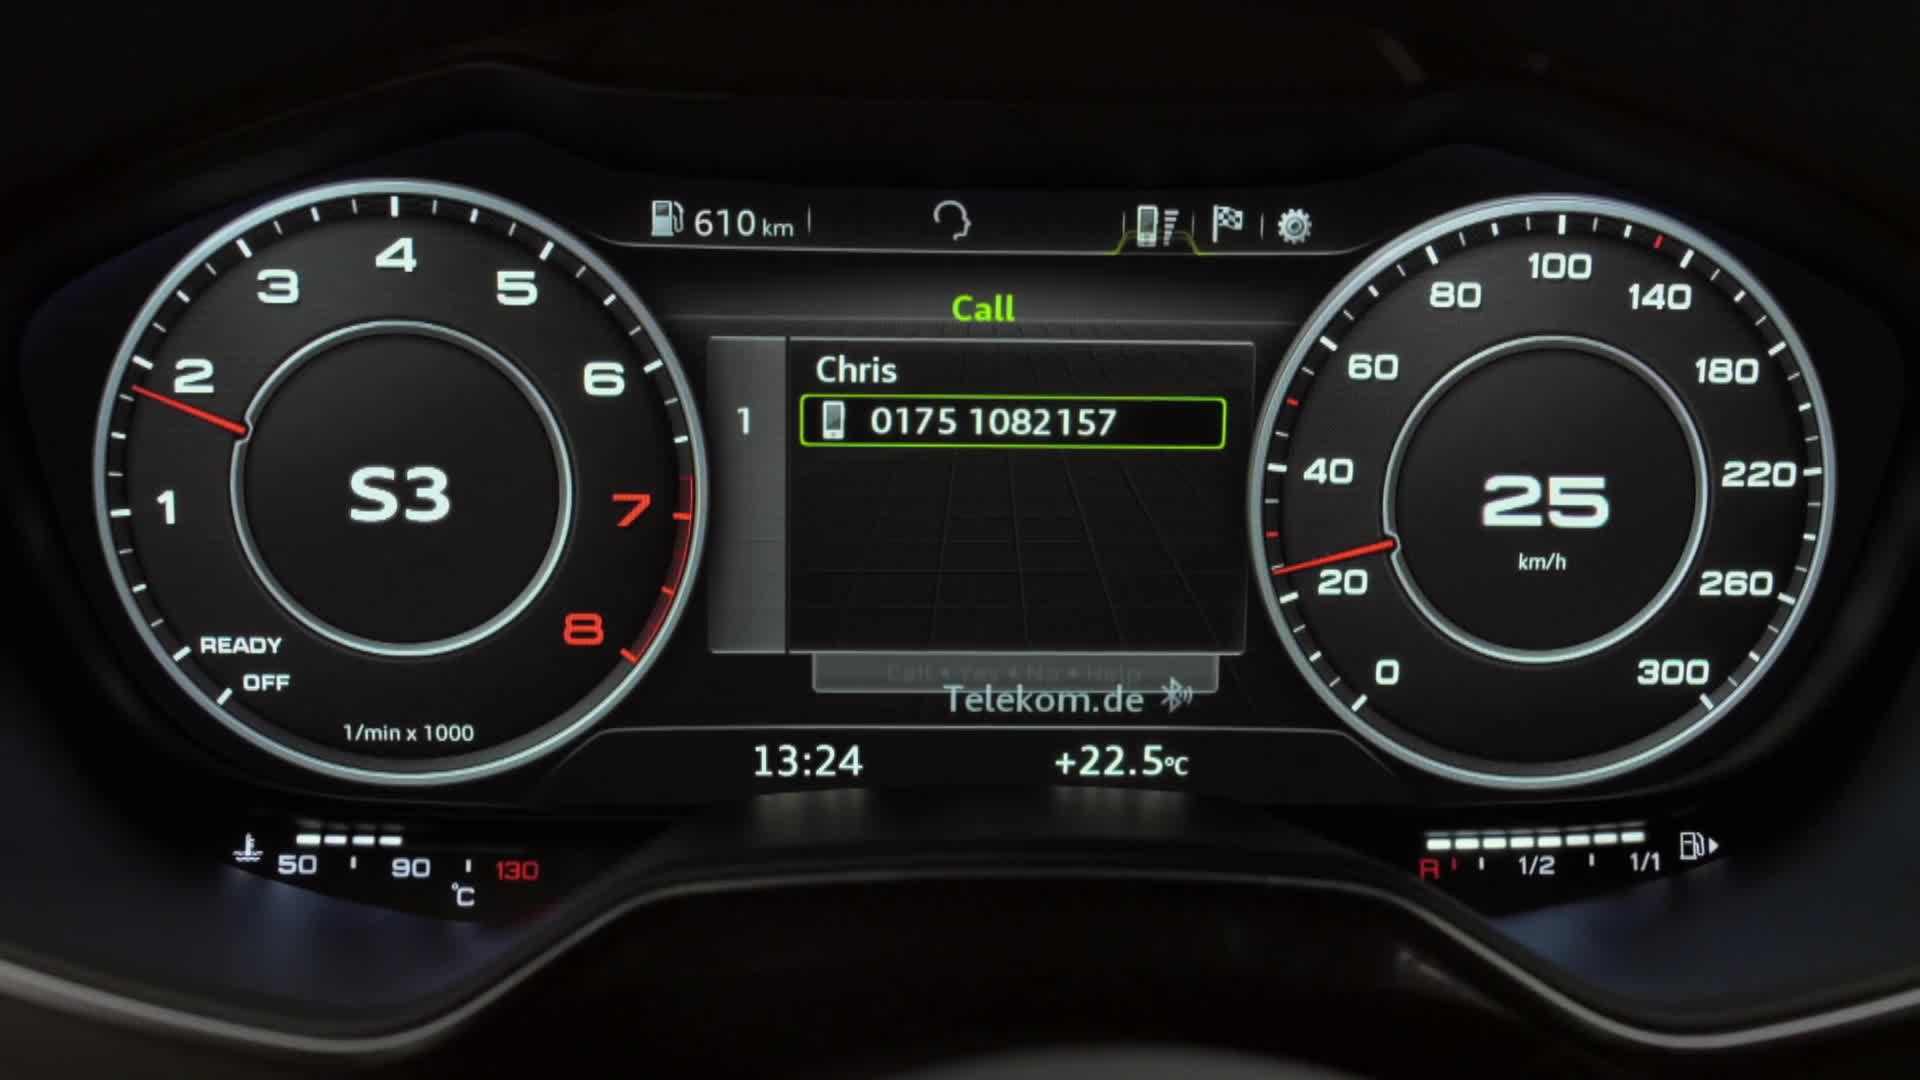 Мультимедийный интерфейс с системой навигации MMI® Navigation plus модели Audi TT